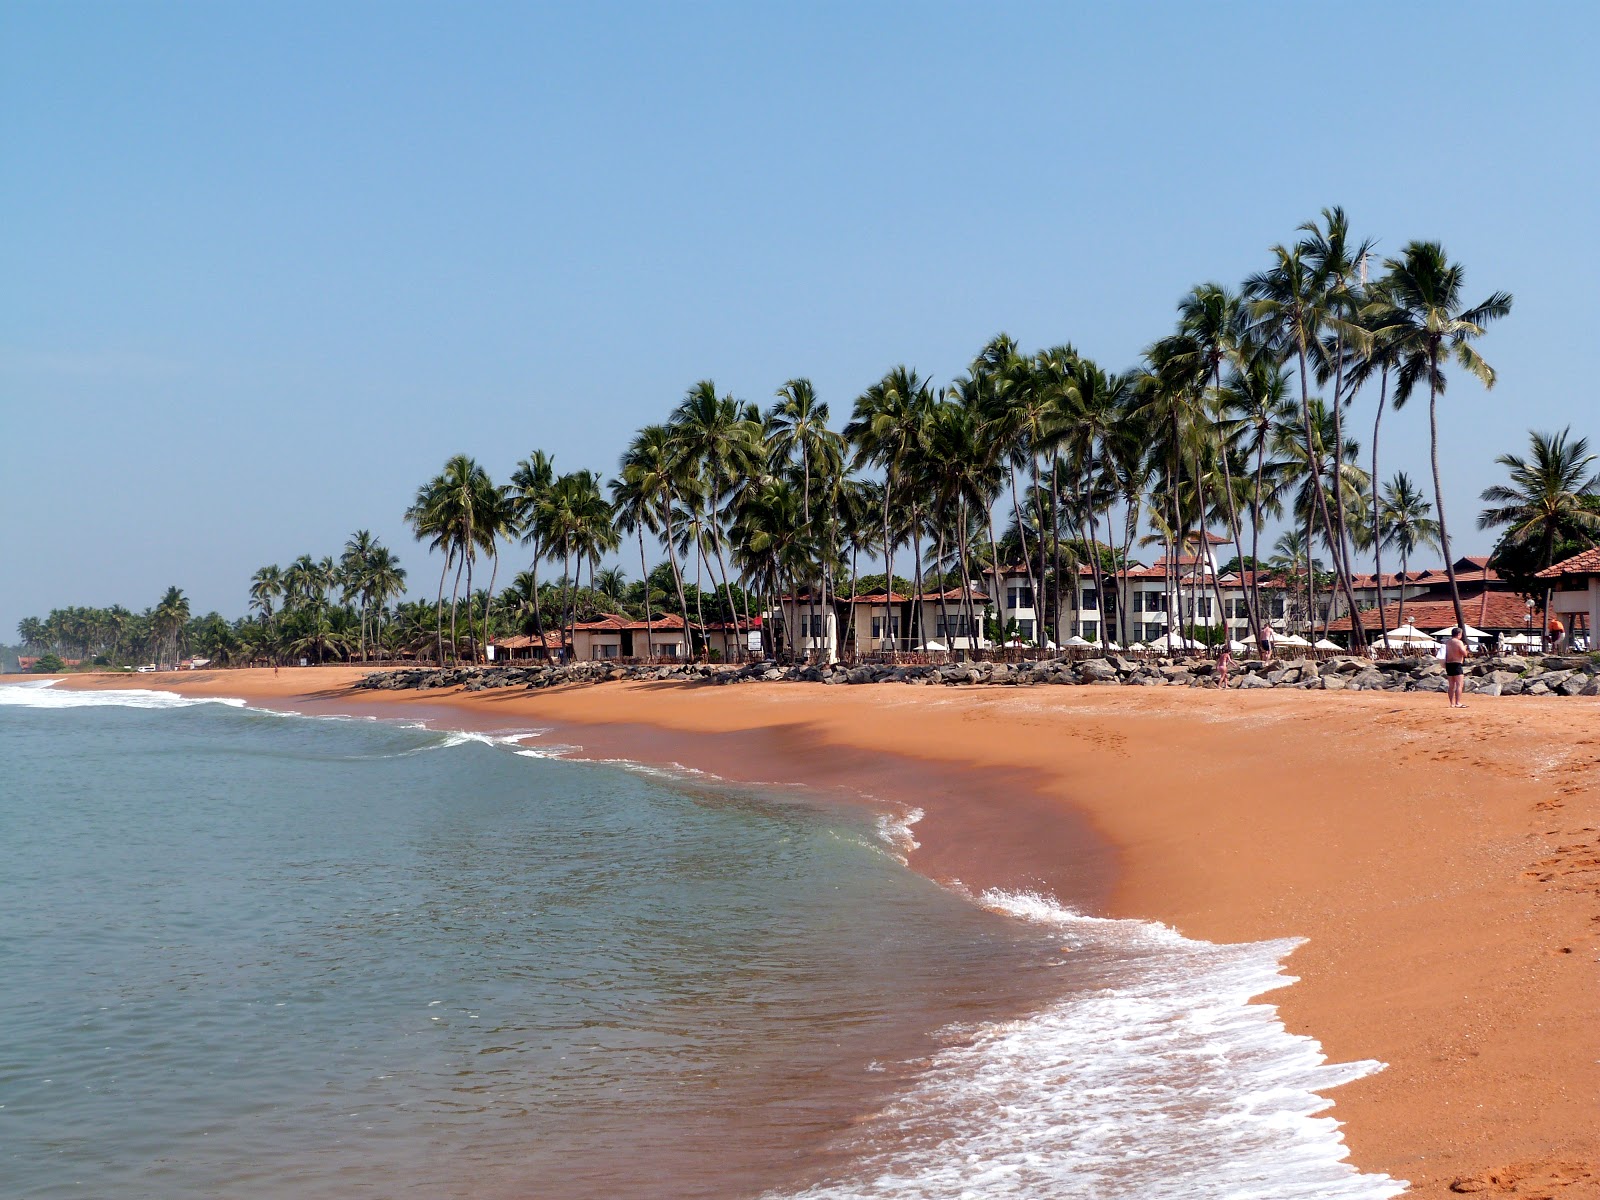 Foto von Dolphin hotel beach mit heller sand Oberfläche